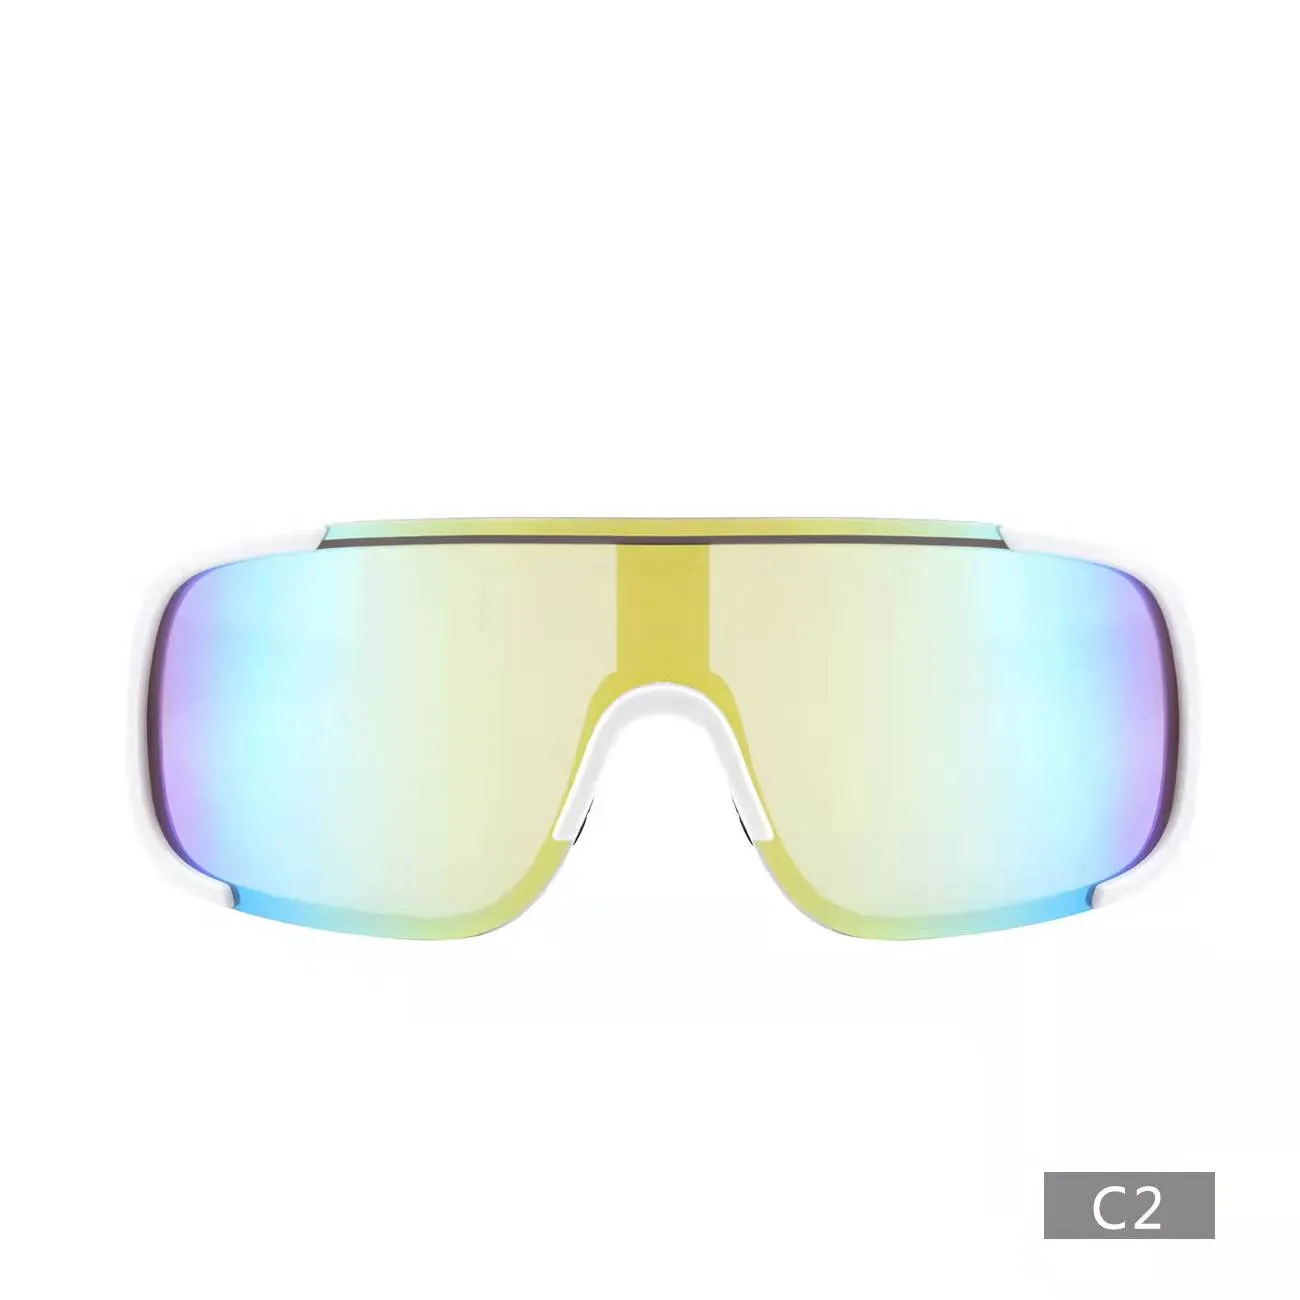 S926 модные солнцезащитные очки для мужчин и женщин, спортивные солнцезащитные очки для езды на велосипеде, велосипедные очки 178V